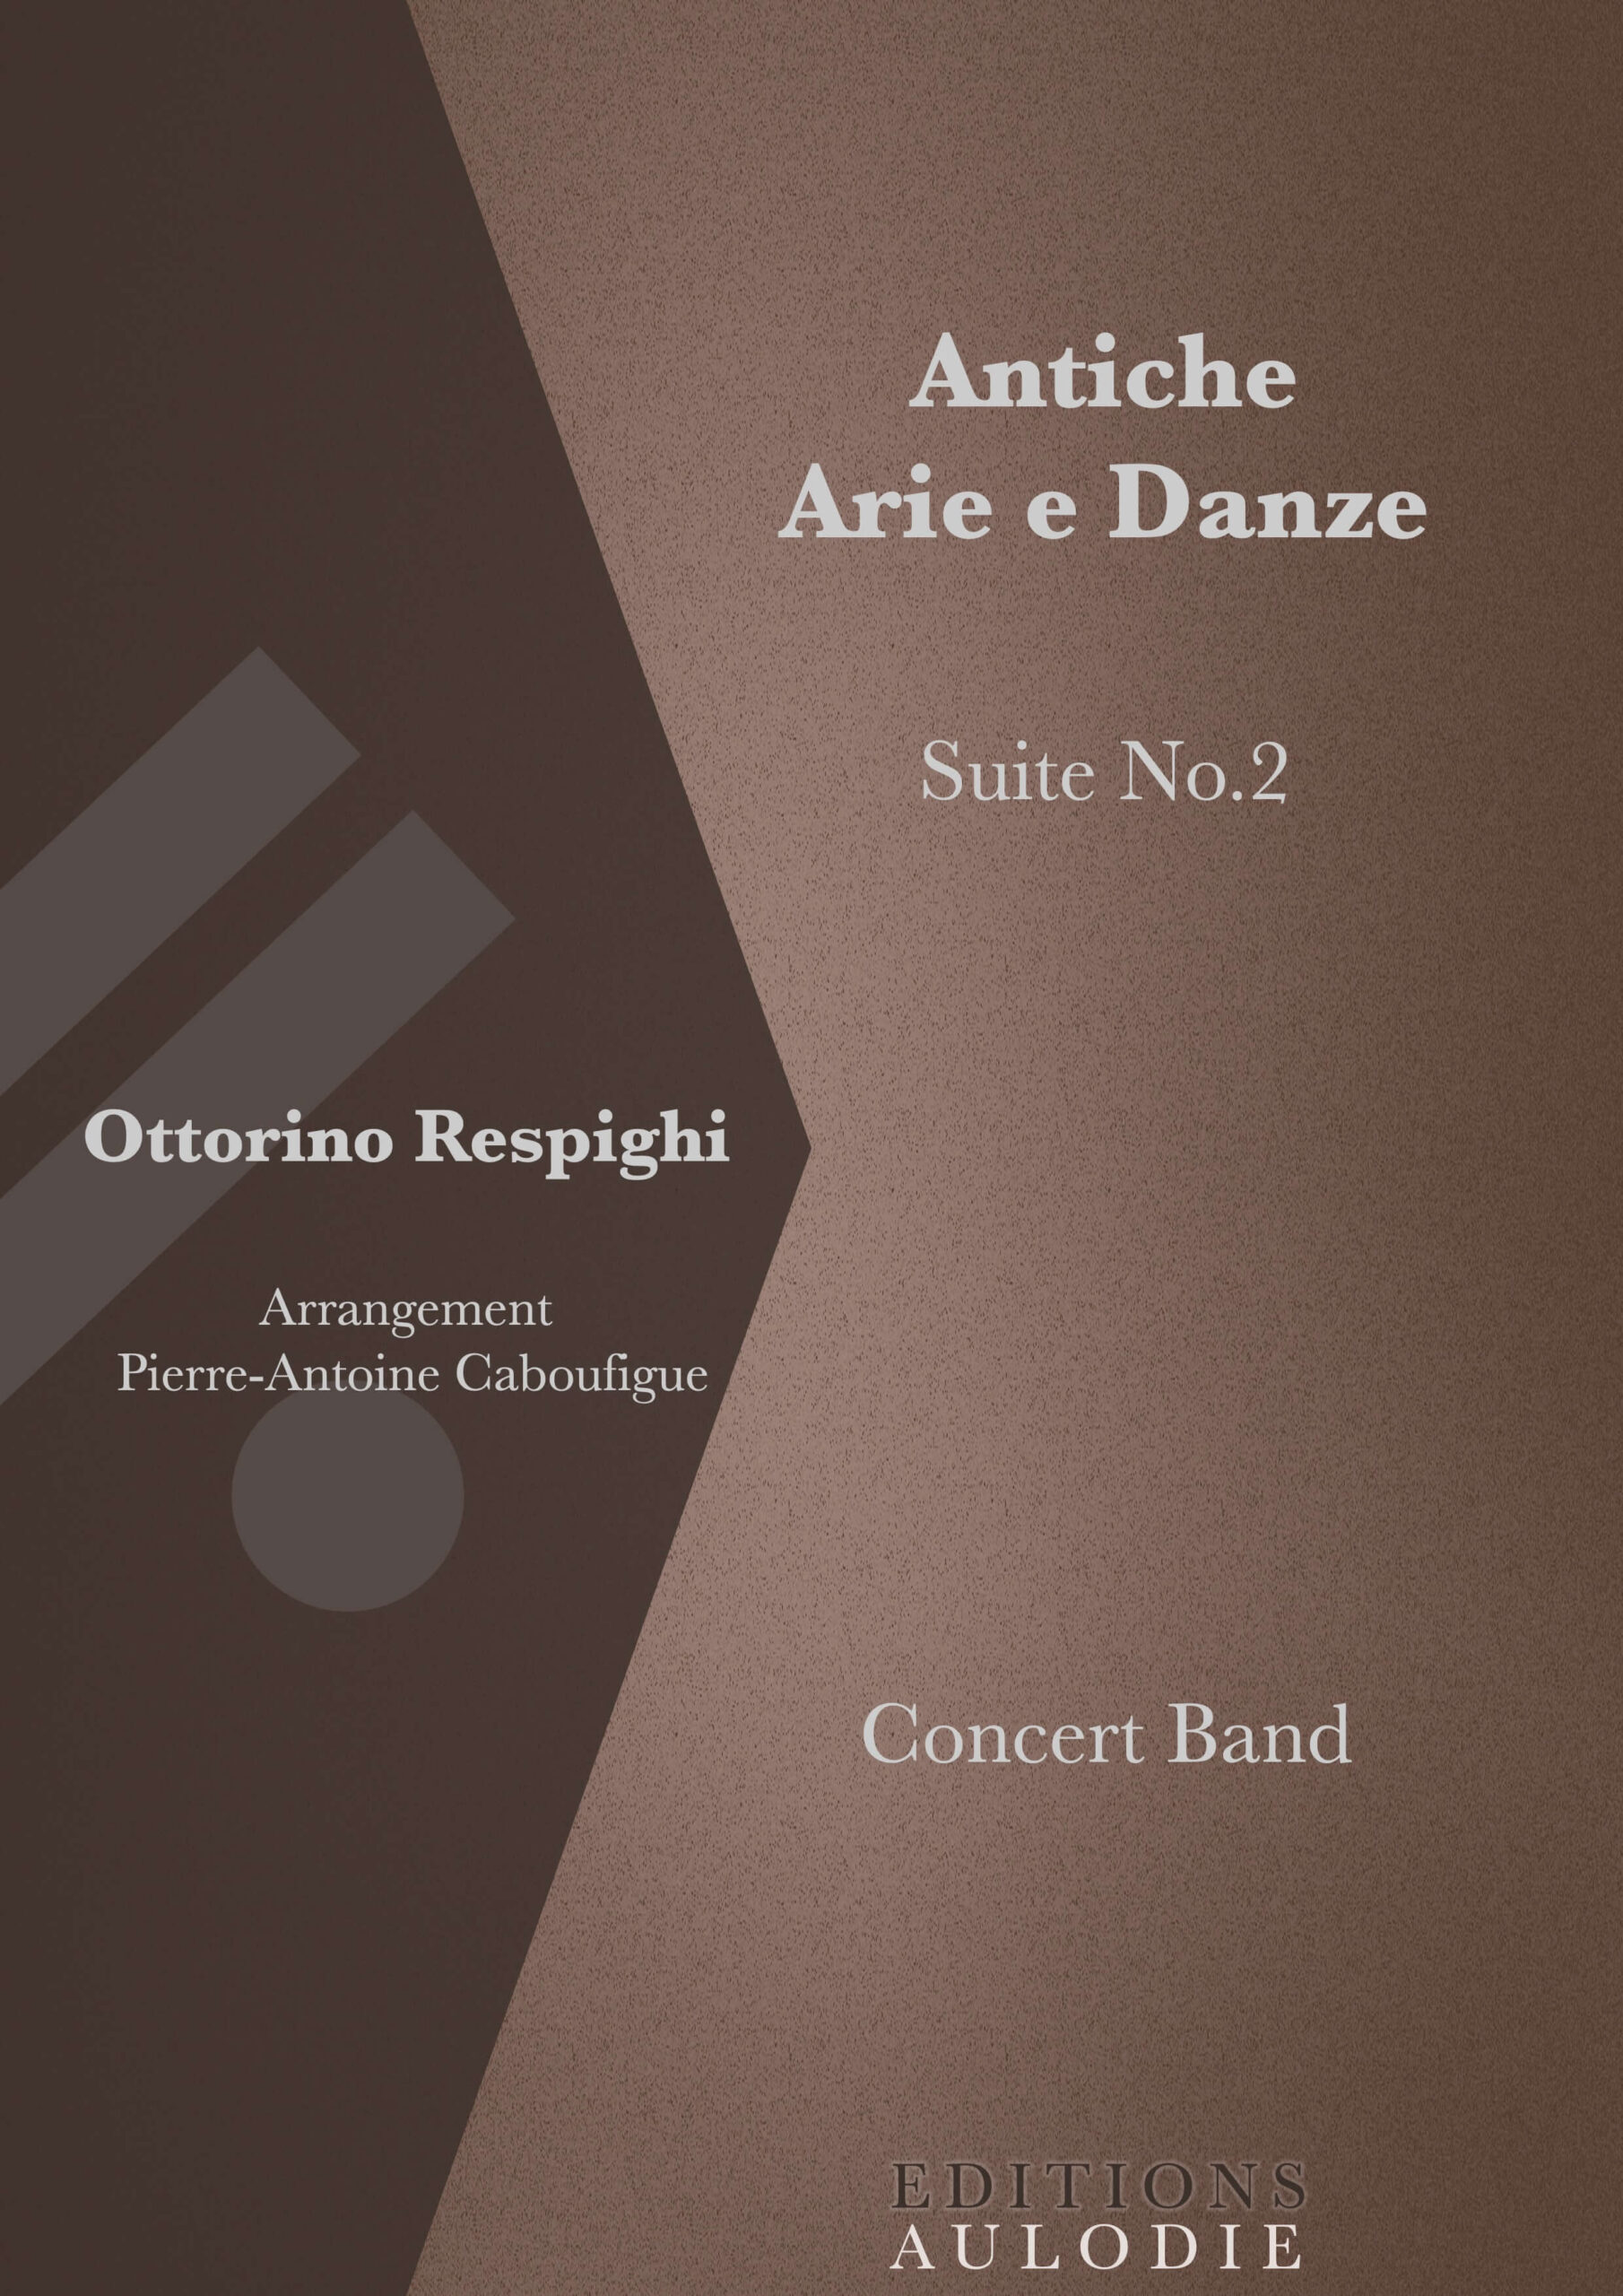 EA01007-Antiche_Arie_e_Danze_Suite_No2-Ottorino_Respighi-Concert_Band